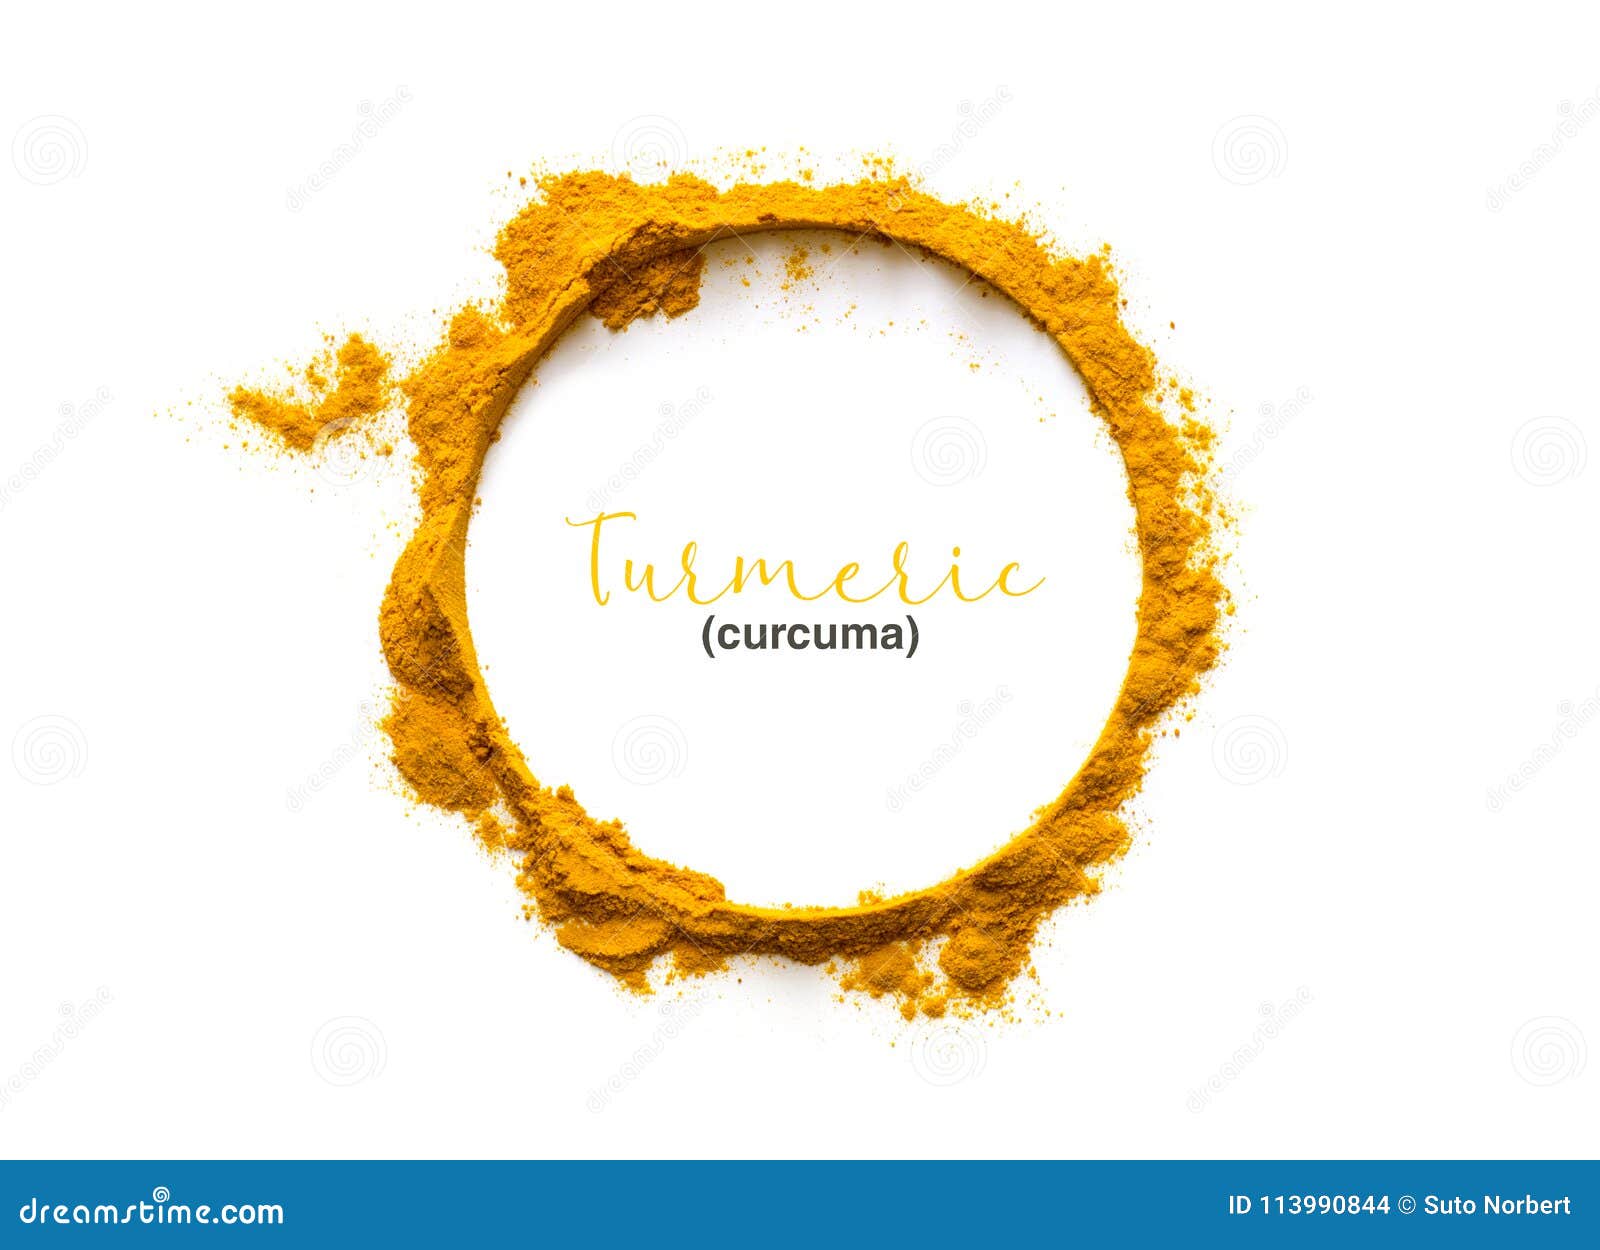 turmeric powder or curcuma